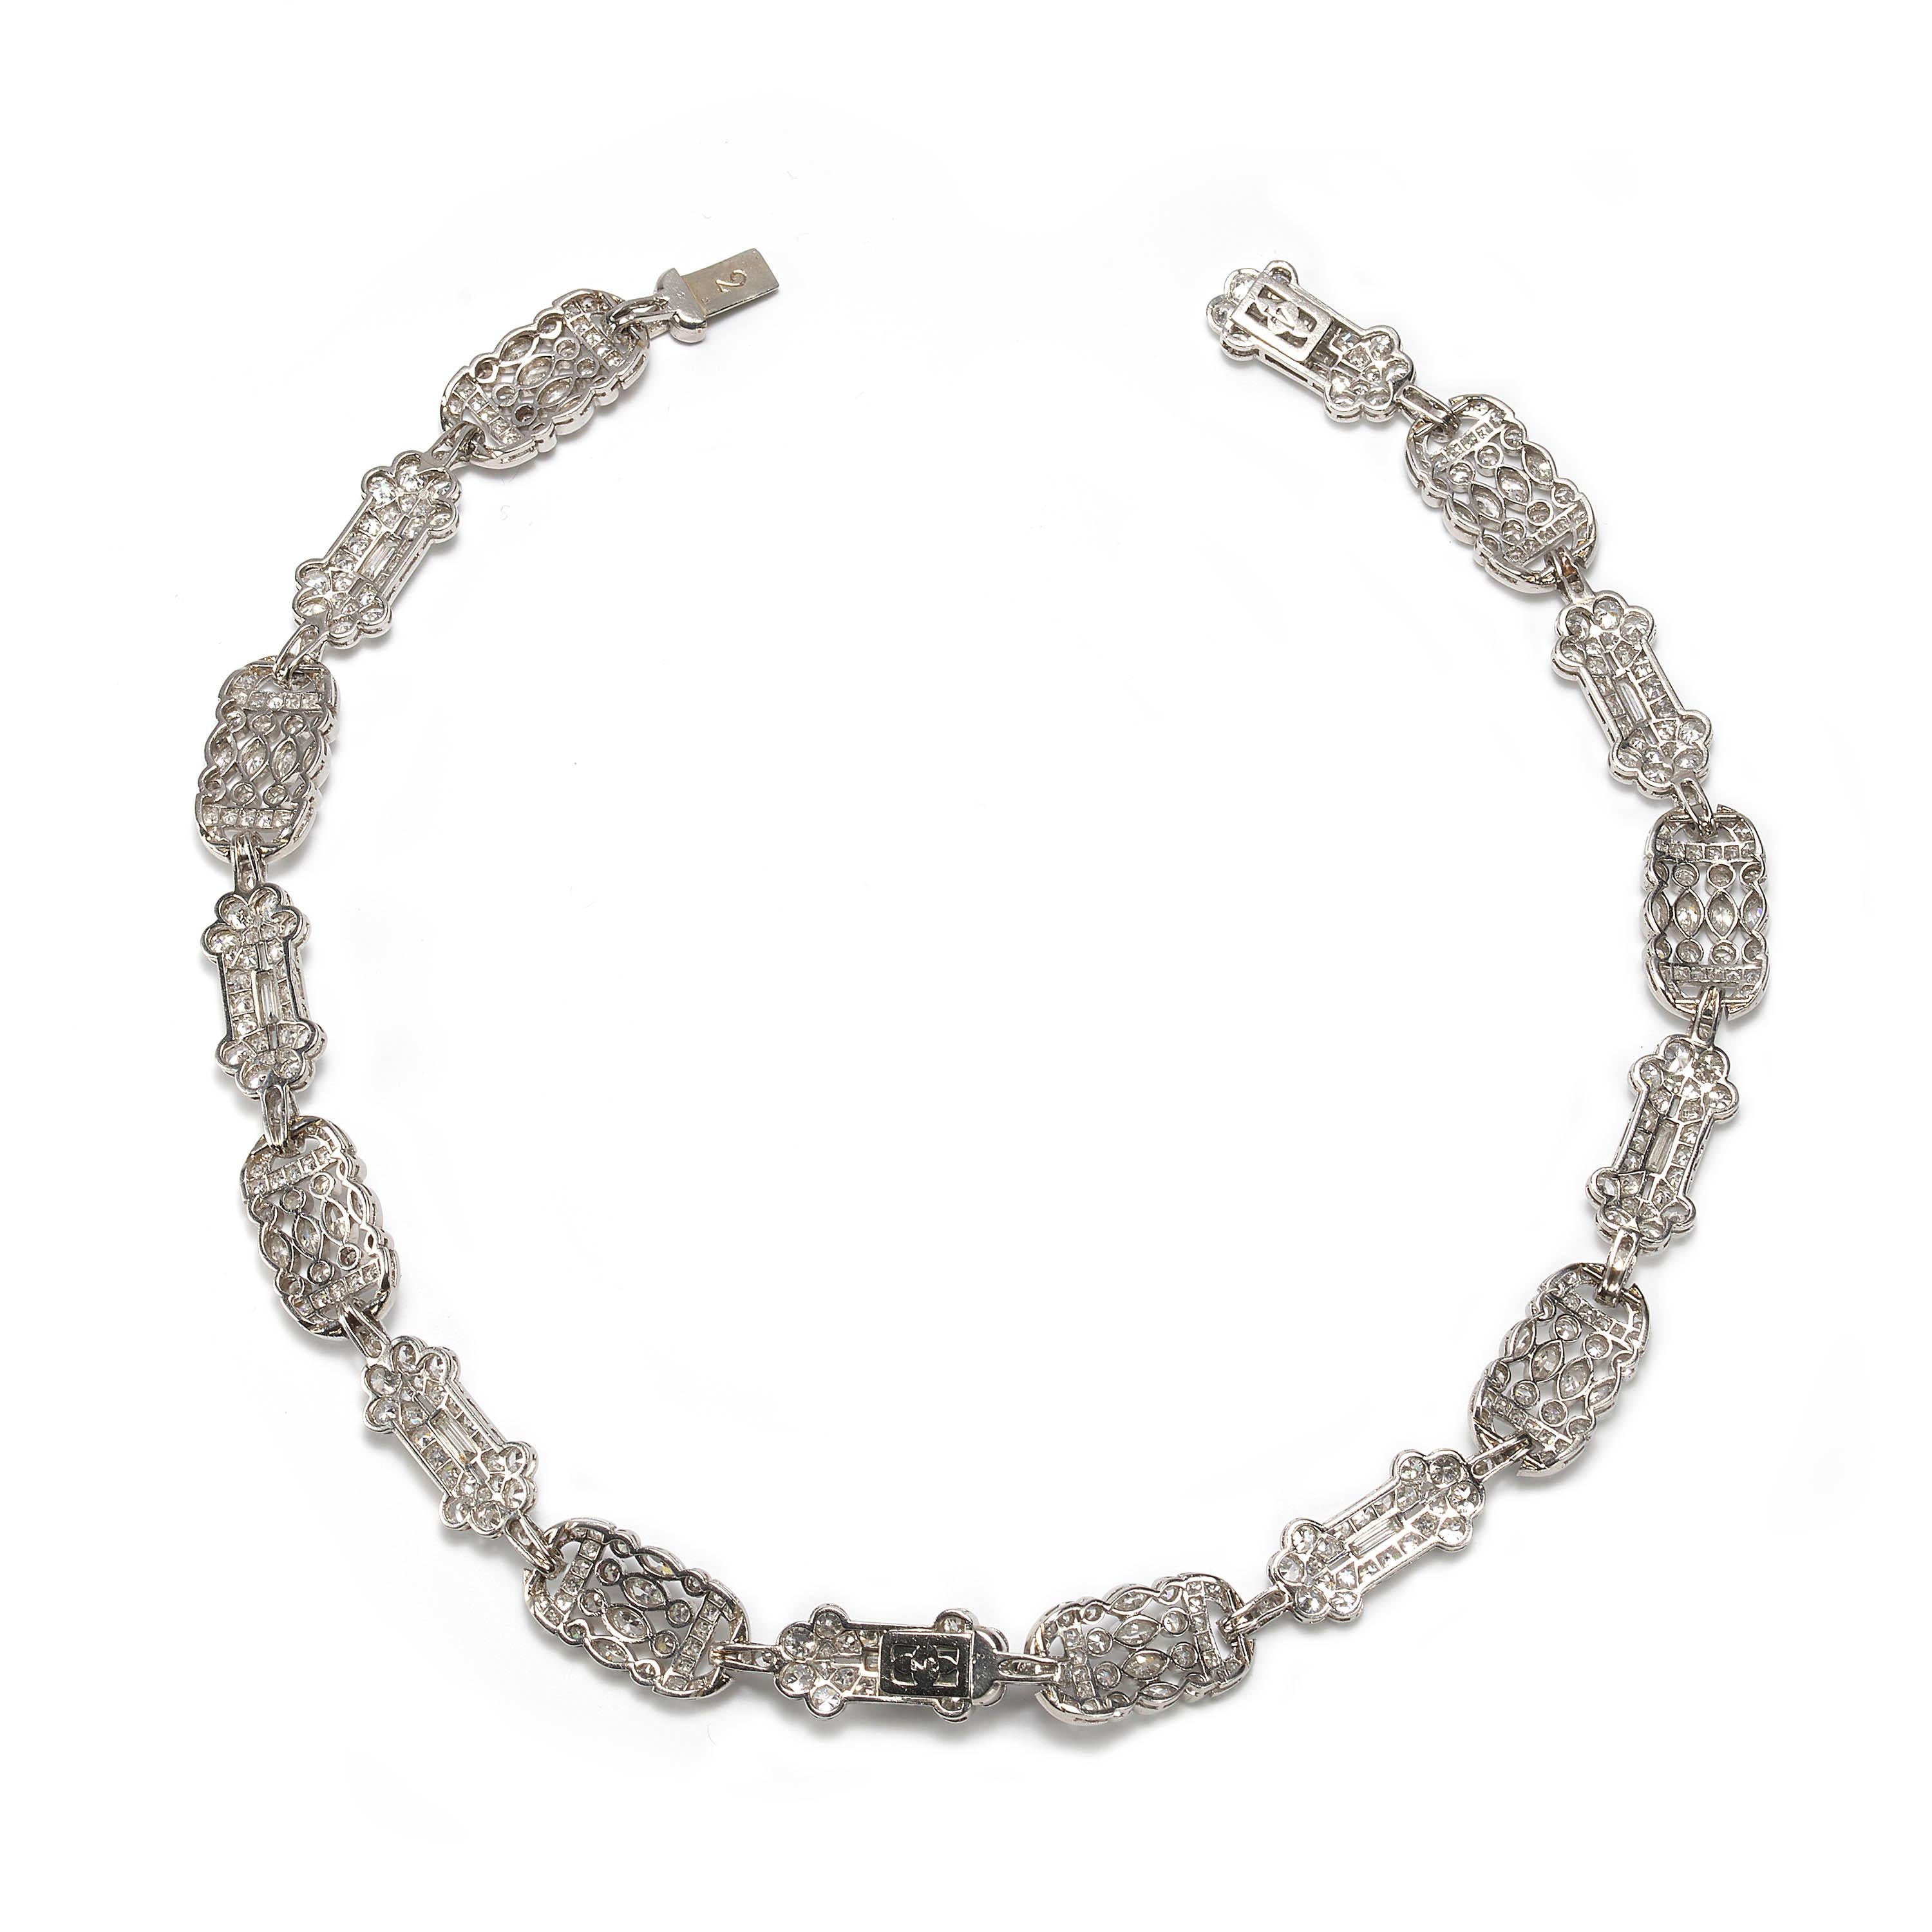 Ein französisches Belle-Époque-Diamantenarmband, jedes Armband ist als acht dekorative Plattenabschnitte mit abwechselnden Mustern gestaltet, besetzt mit runden, einzelnen, Baguette- und Marquiseschliff-Diamanten, mit einem geschätzten Gesamtgewicht